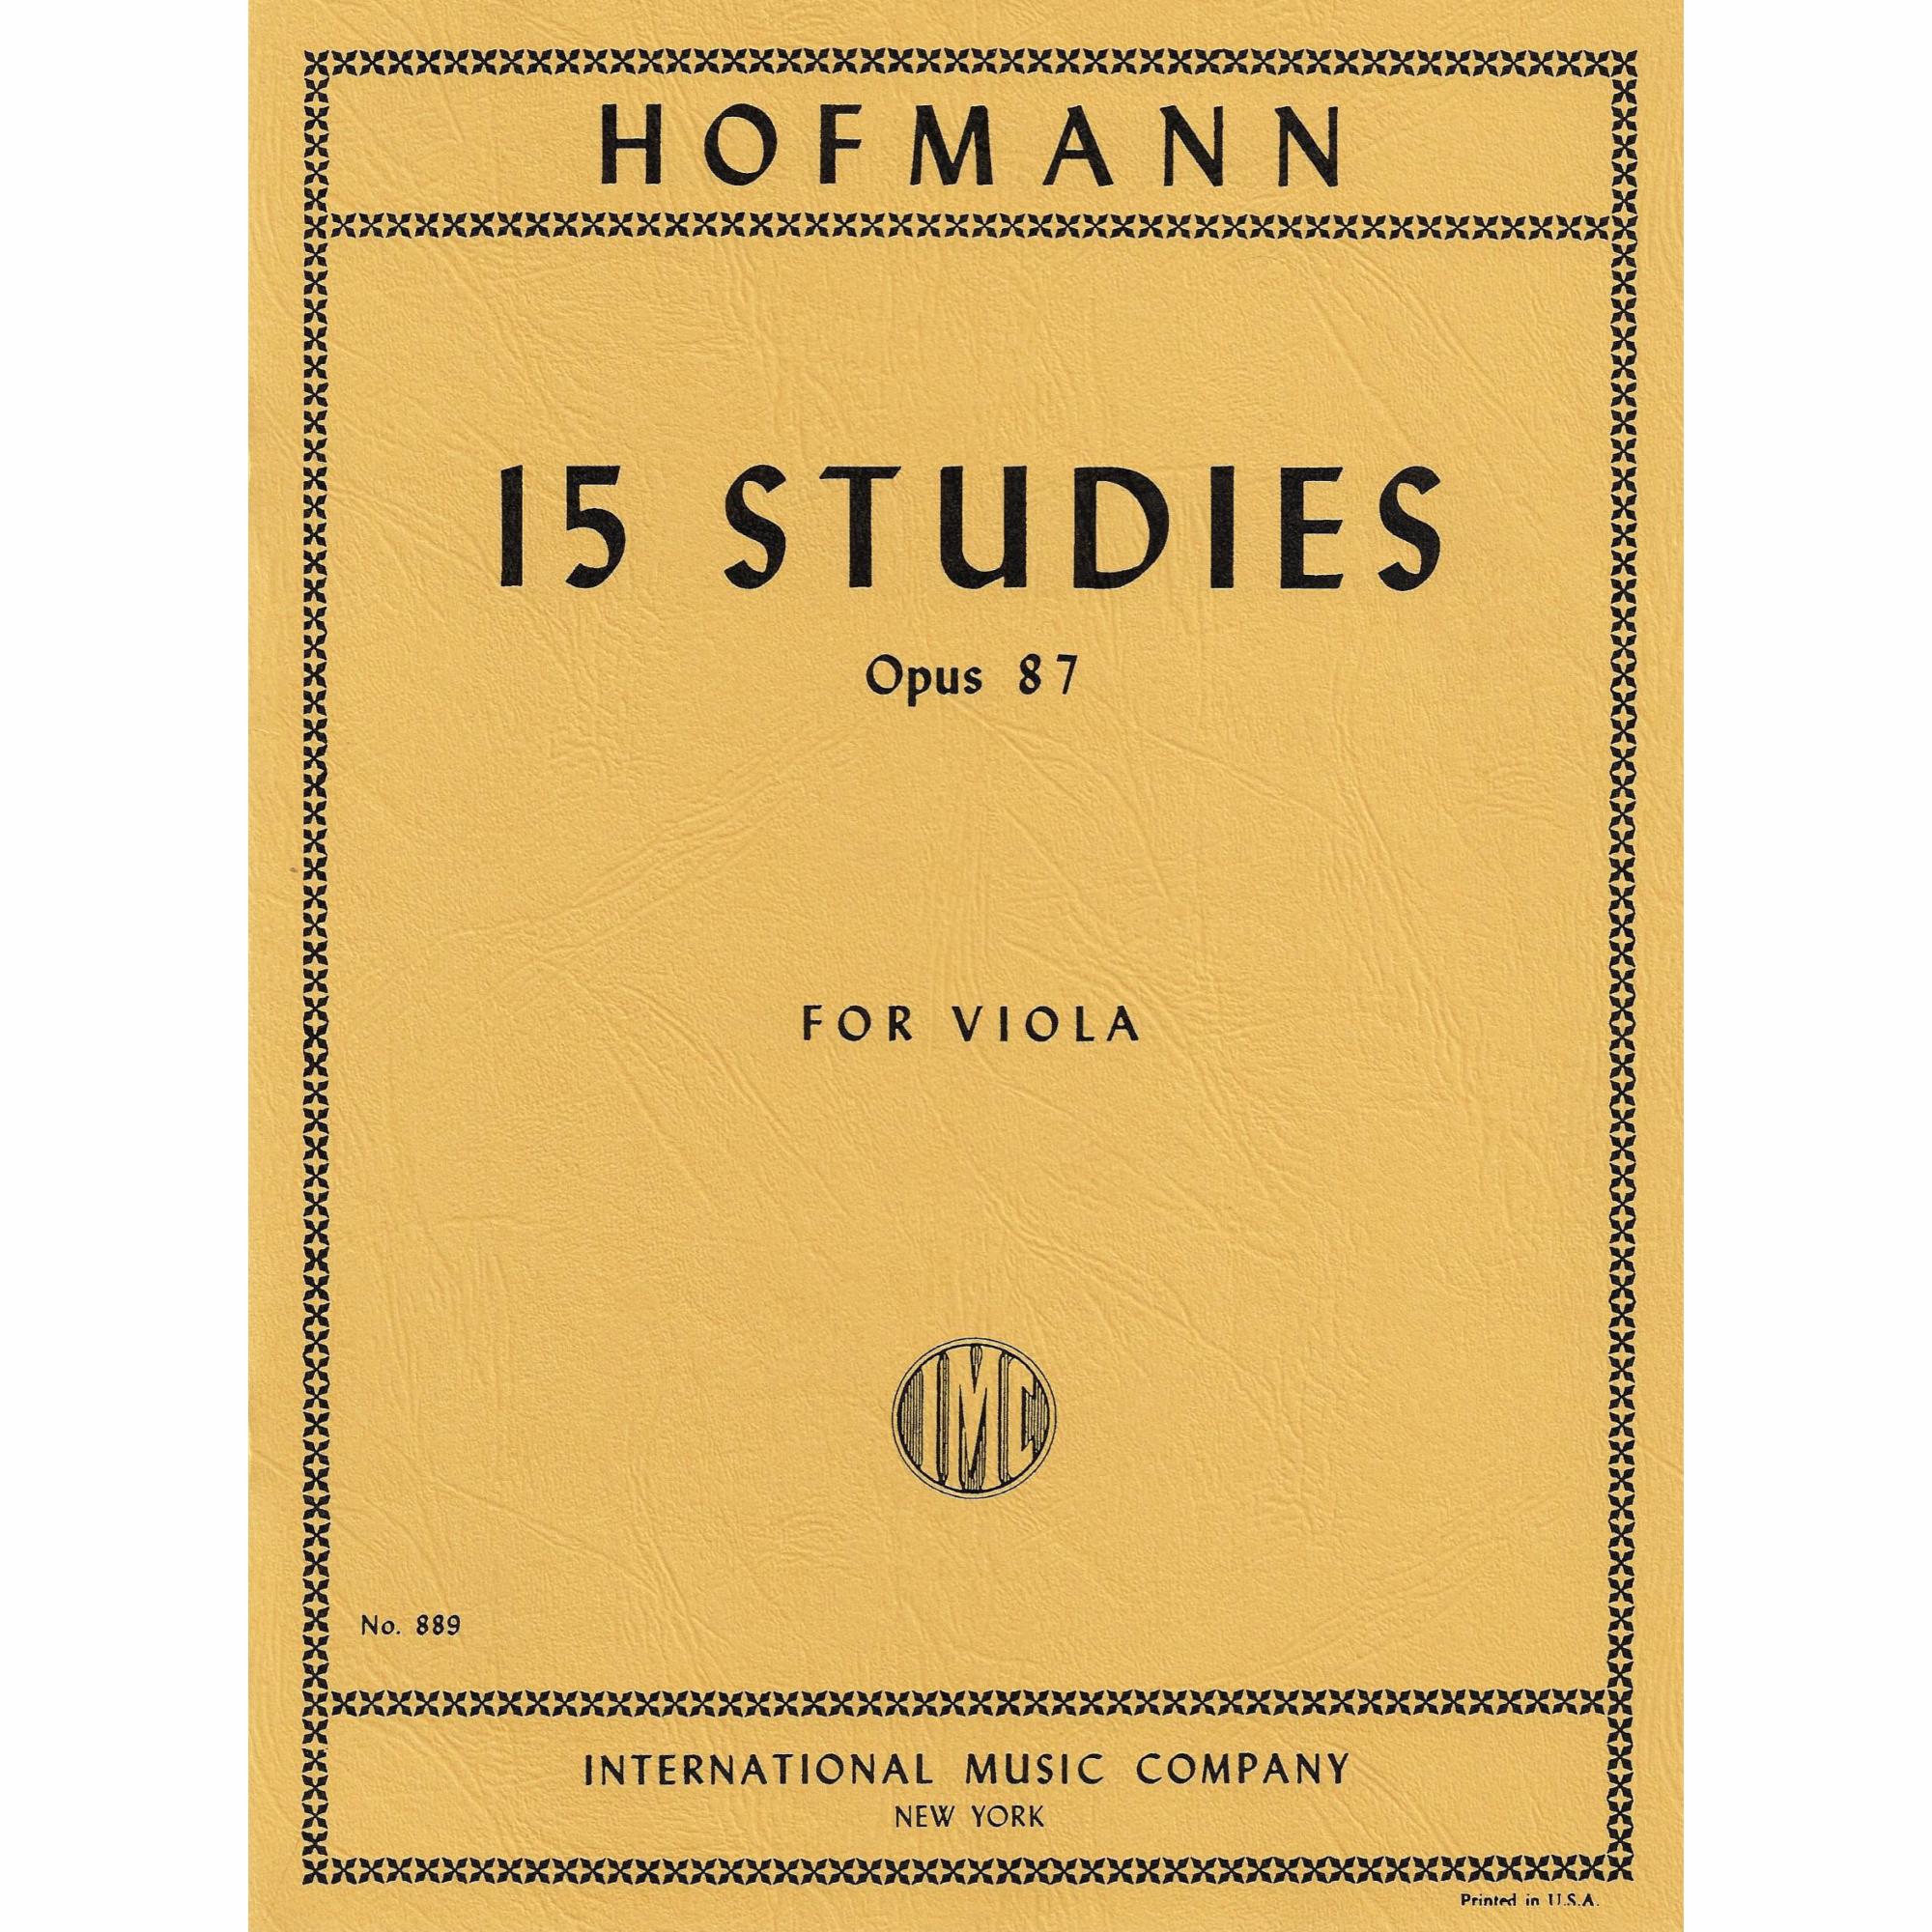 Hofmann -- 15 Studies, Op. 87 for Viola